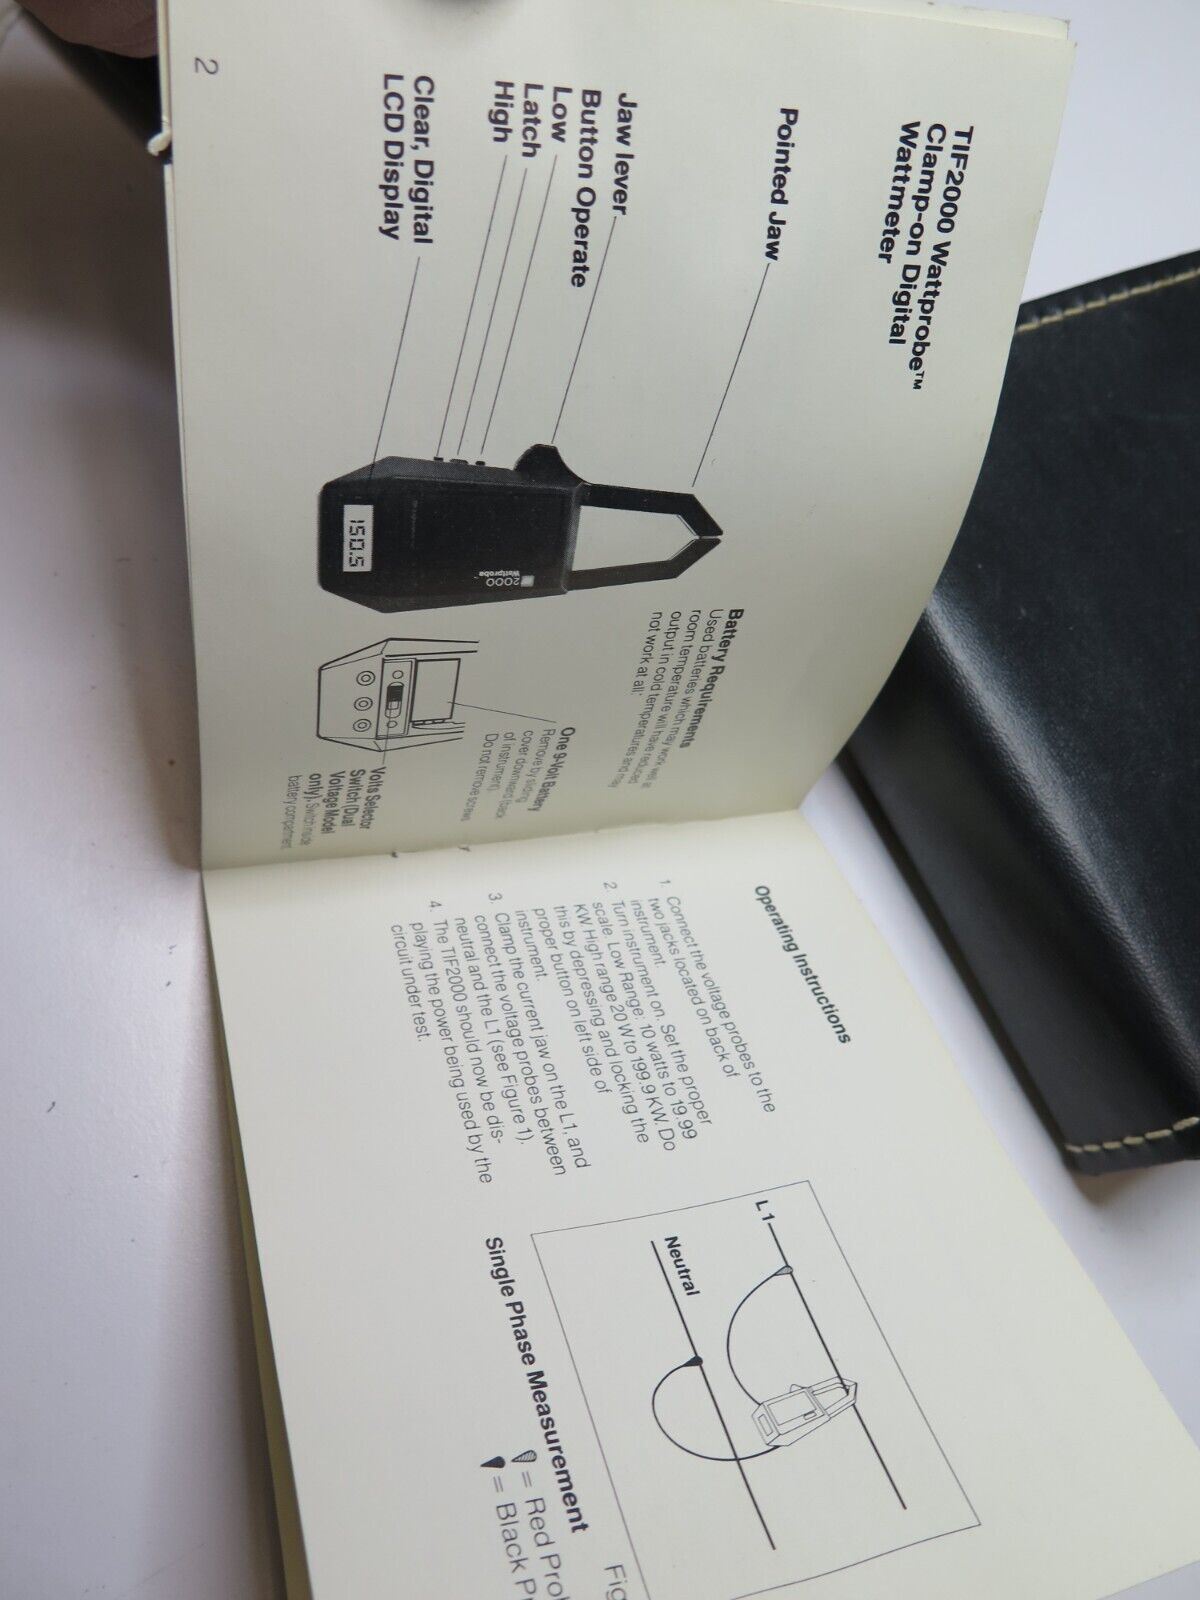 TIF Instruments 2000A Wattprobe w/ Case & Manual